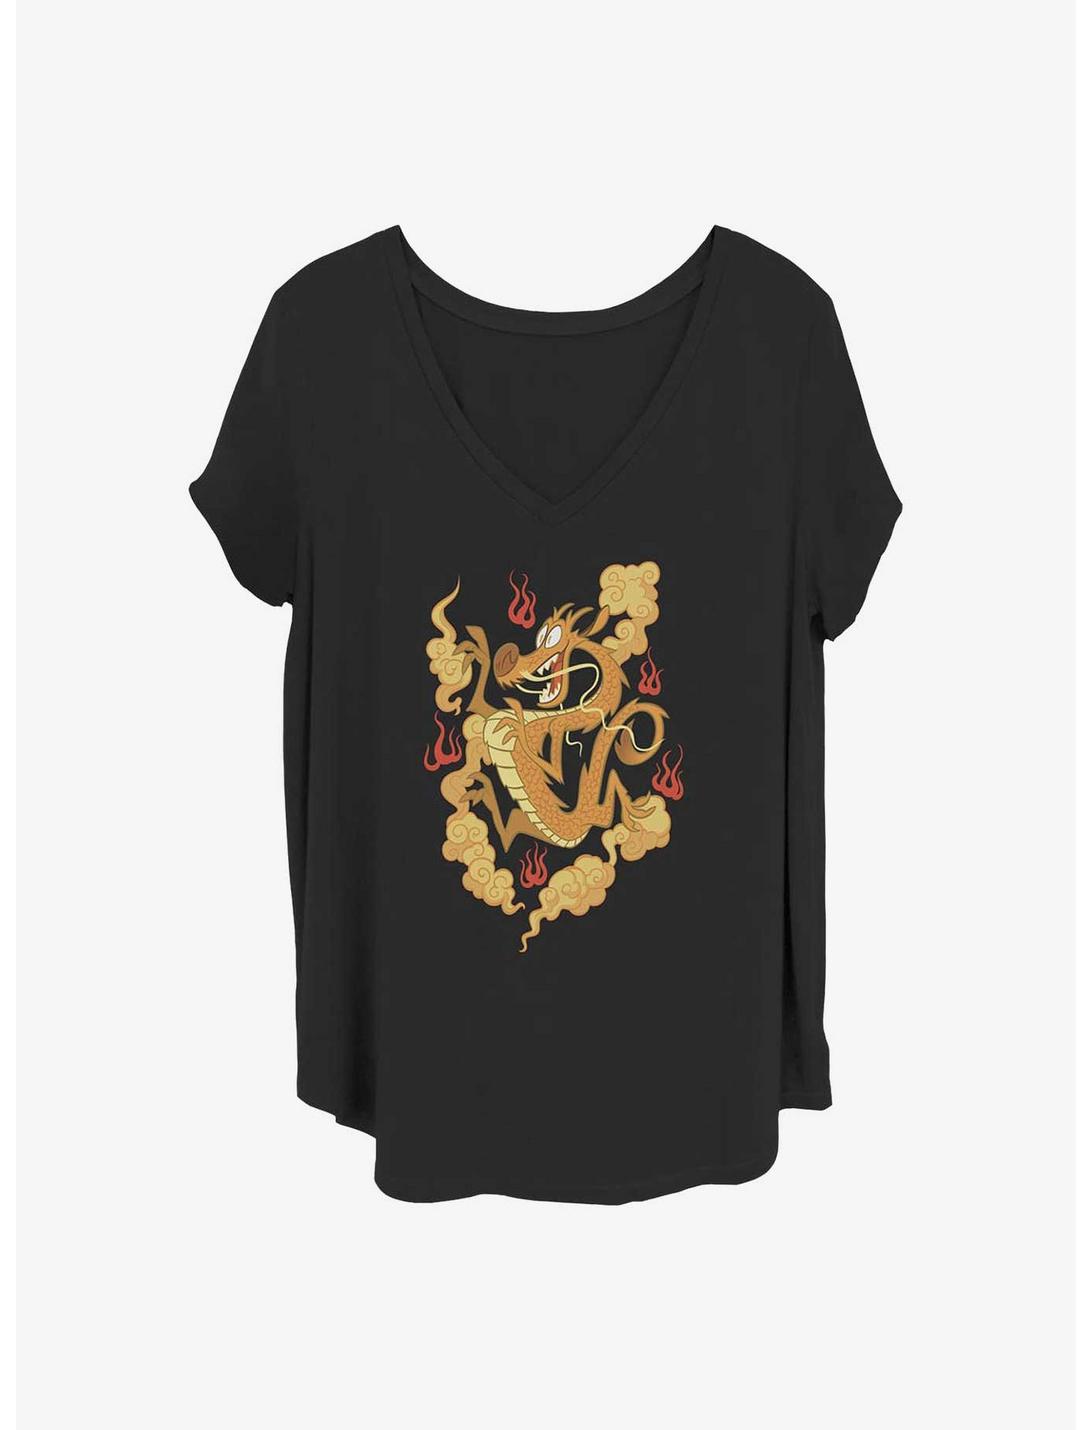 Disney Mulan Golden Mushu Girls T-Shirt Plus Size, BLACK, hi-res